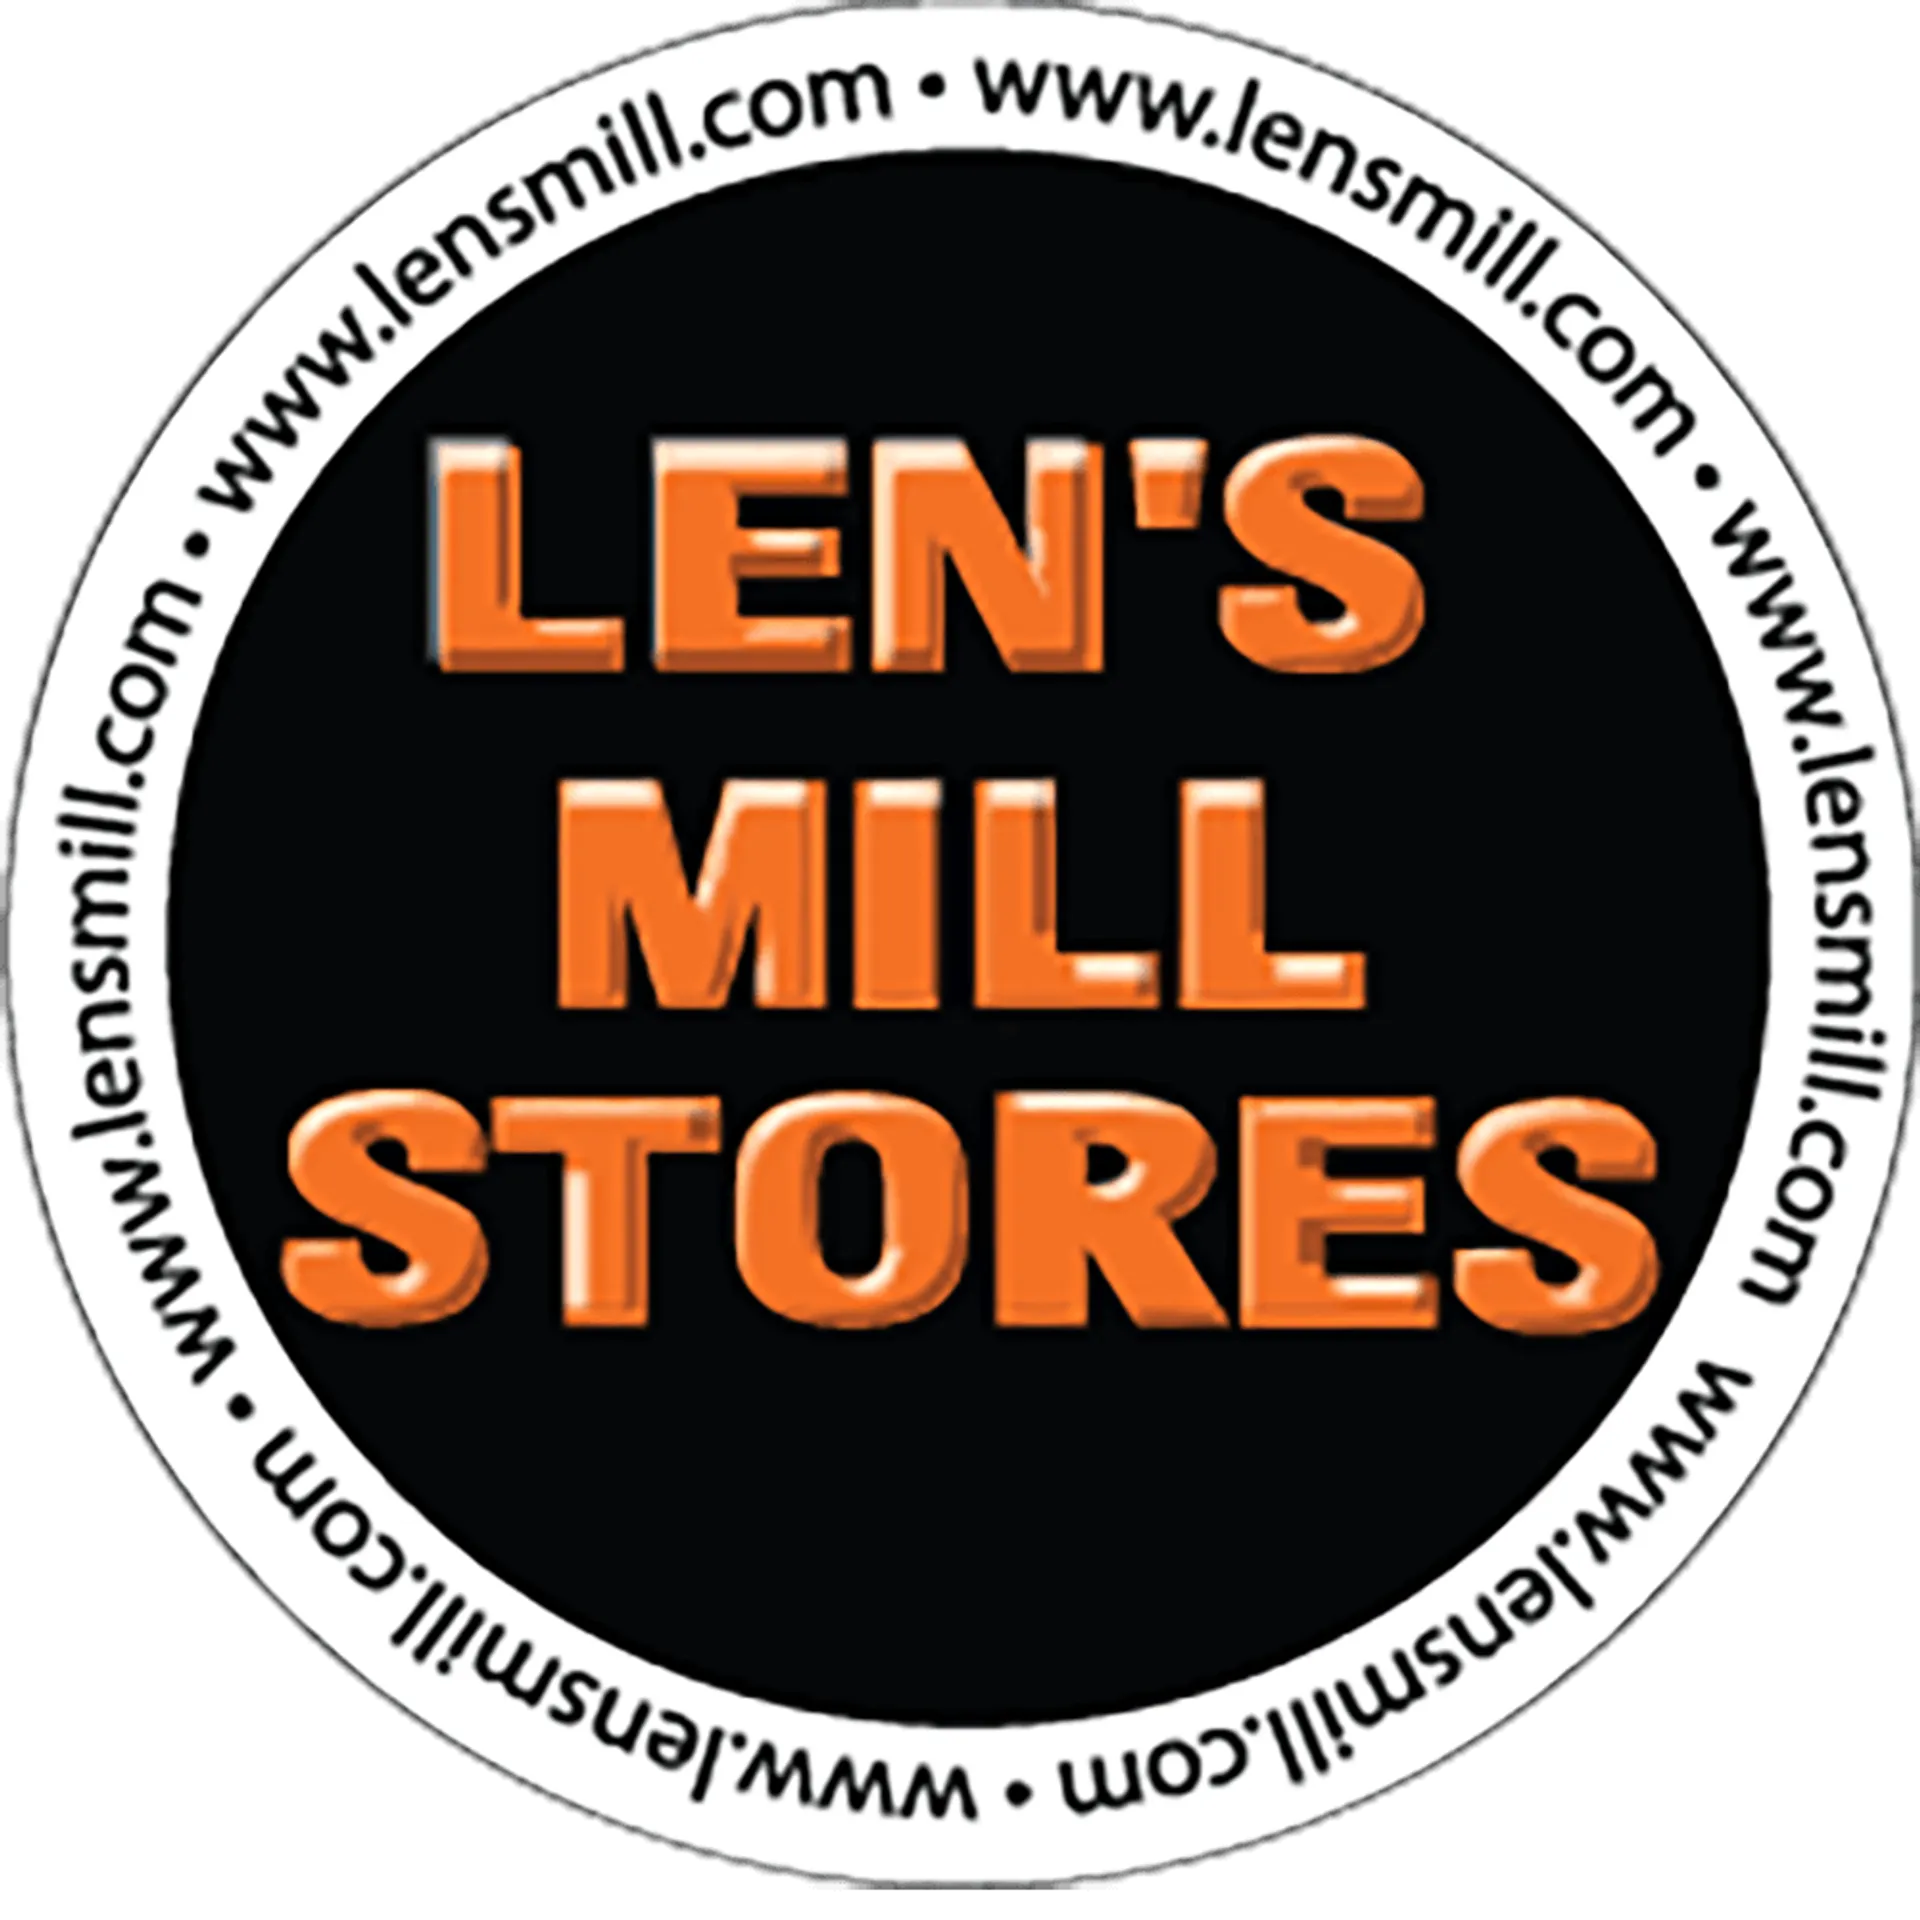 LEN'S MILL STORES logo